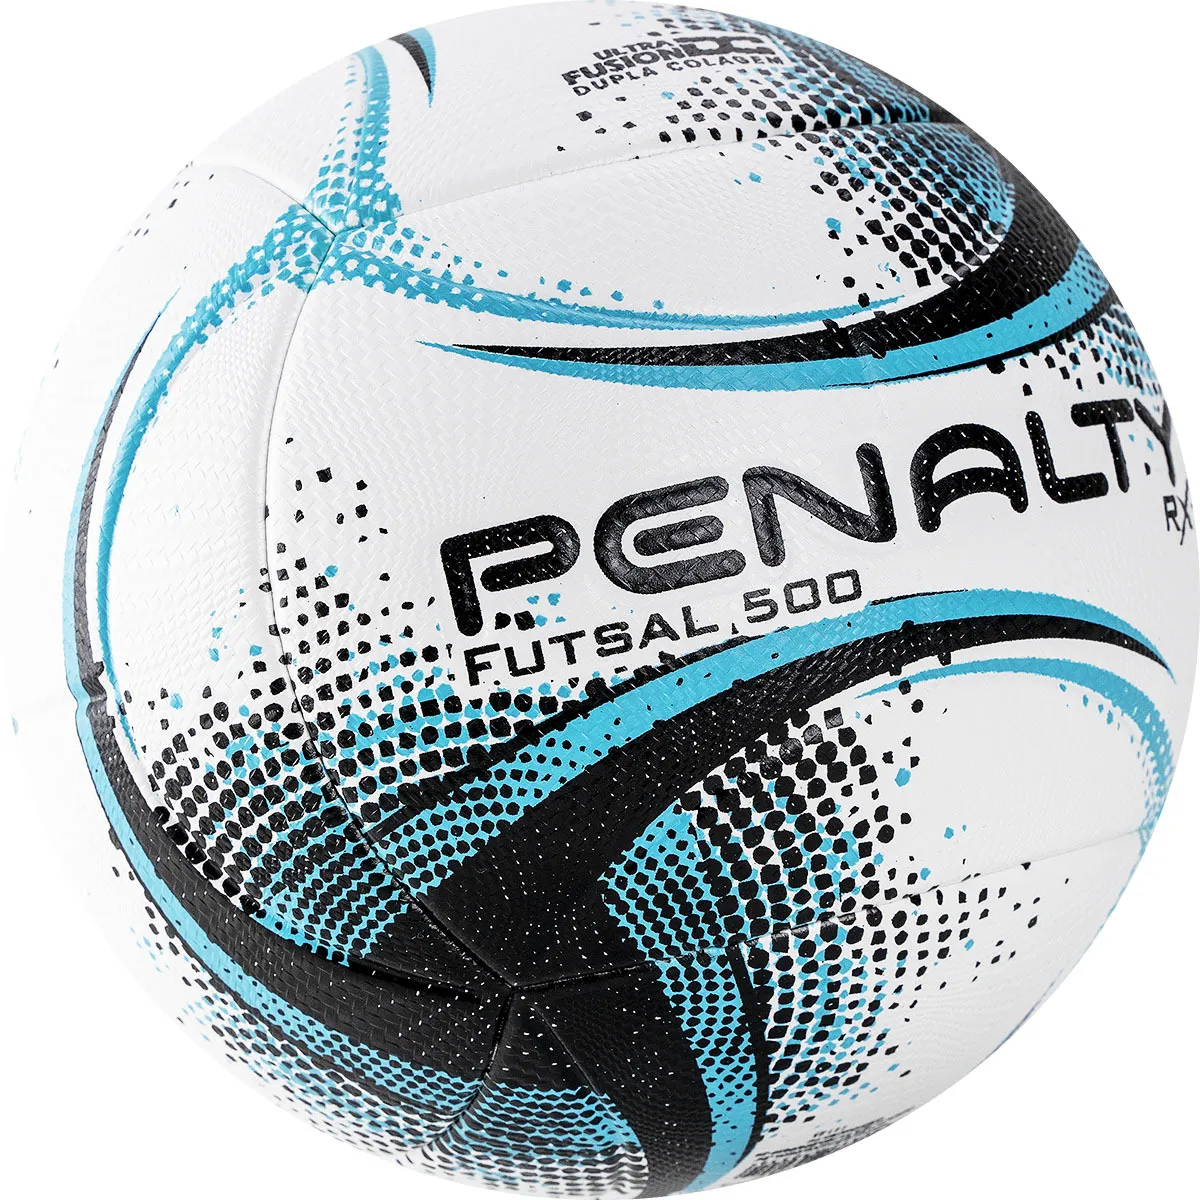 Фото Мяч футзальный Penalty Futsal 500 RX XXI №4 бело-черно-голубой 5212991140-U со склада магазина СпортЕВ